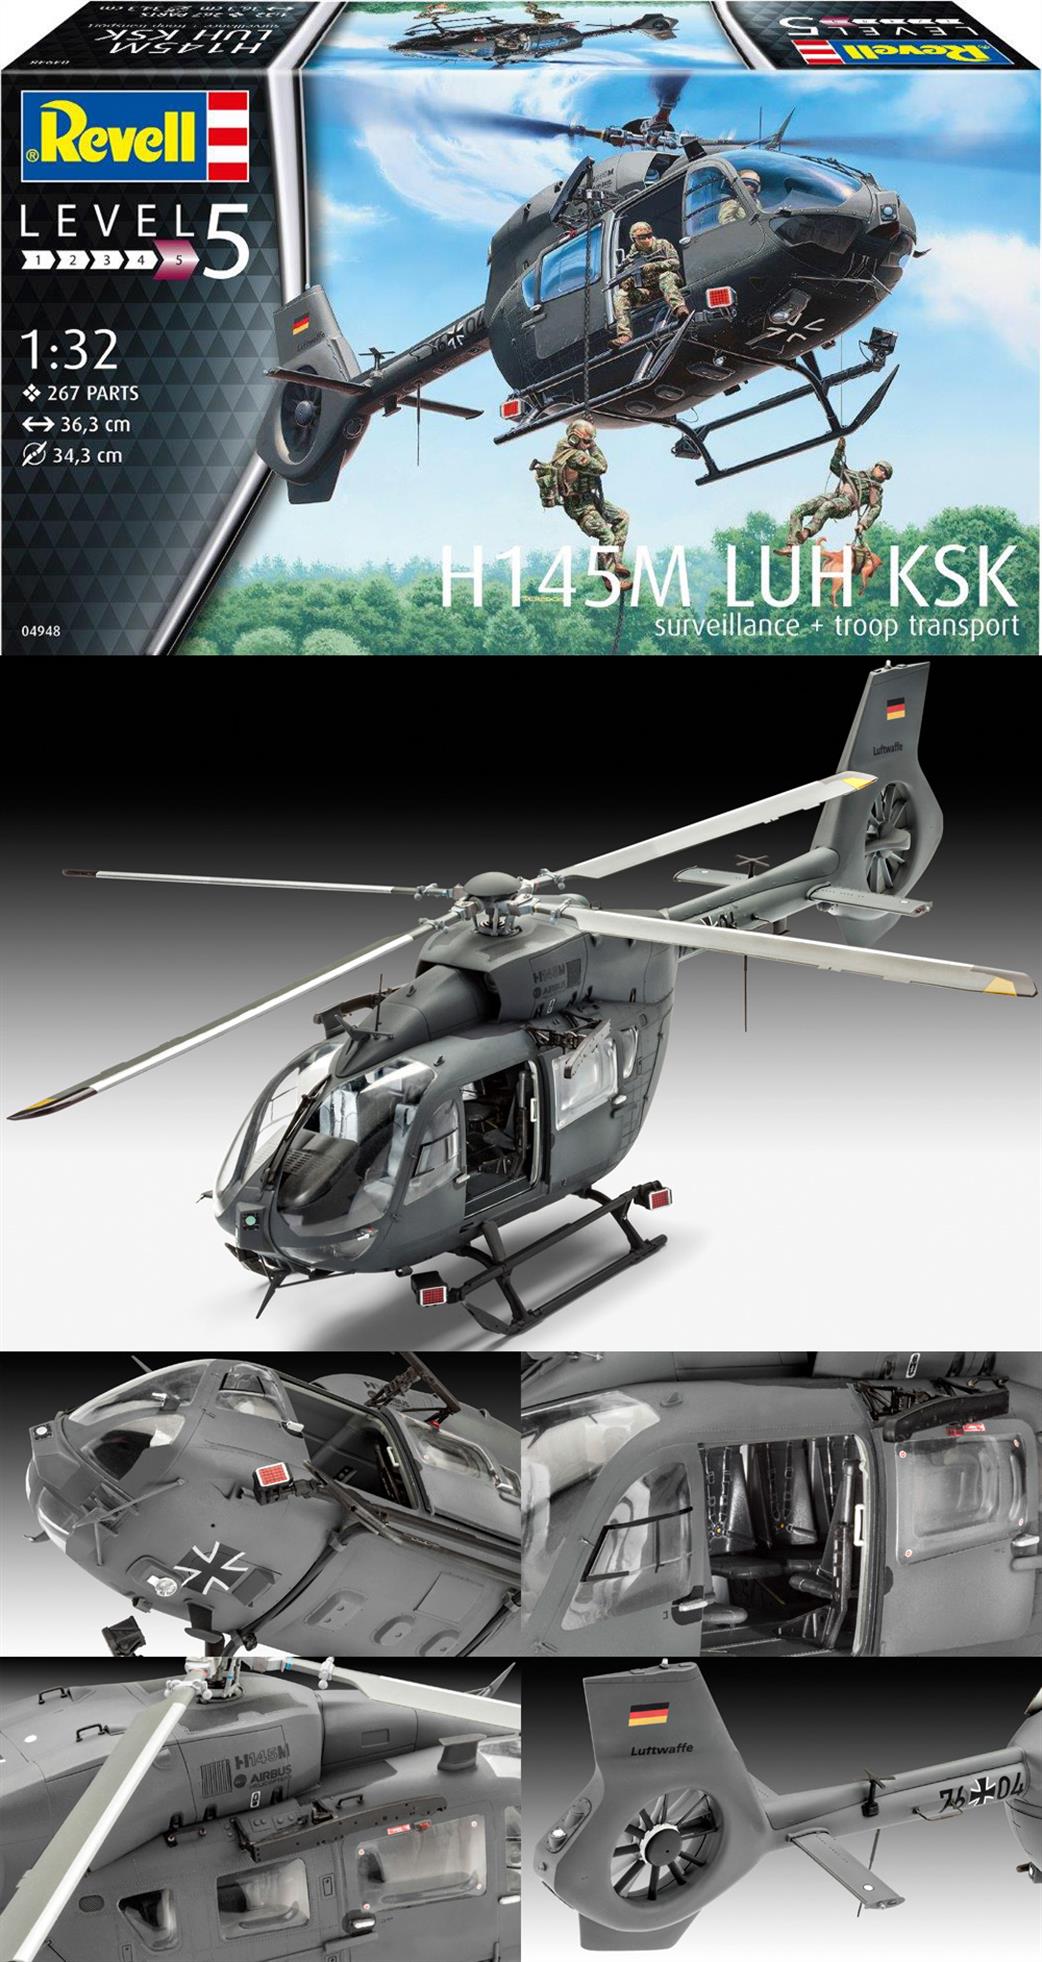 Revell 04948 H145M LUH KSK Surveillance & Troop Transport Helicopter Kit 1/32